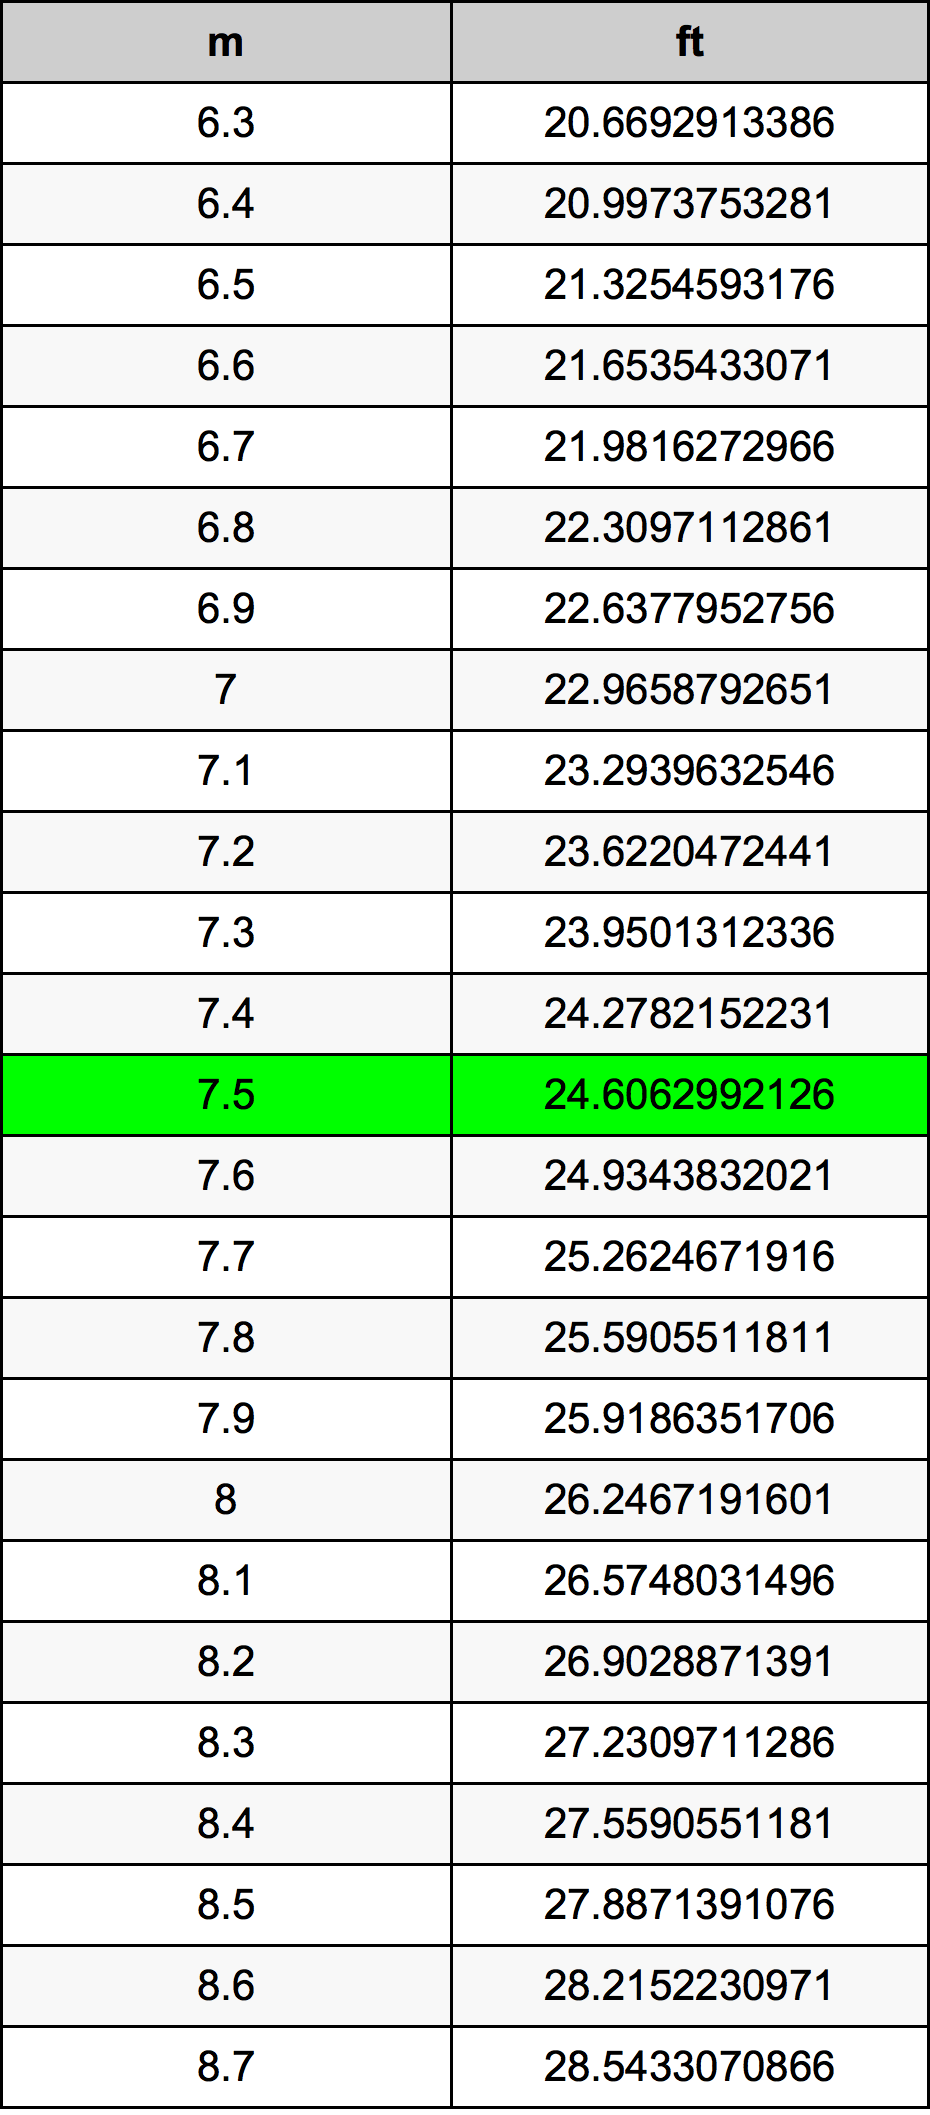 7.5 Metru tabelul de conversie